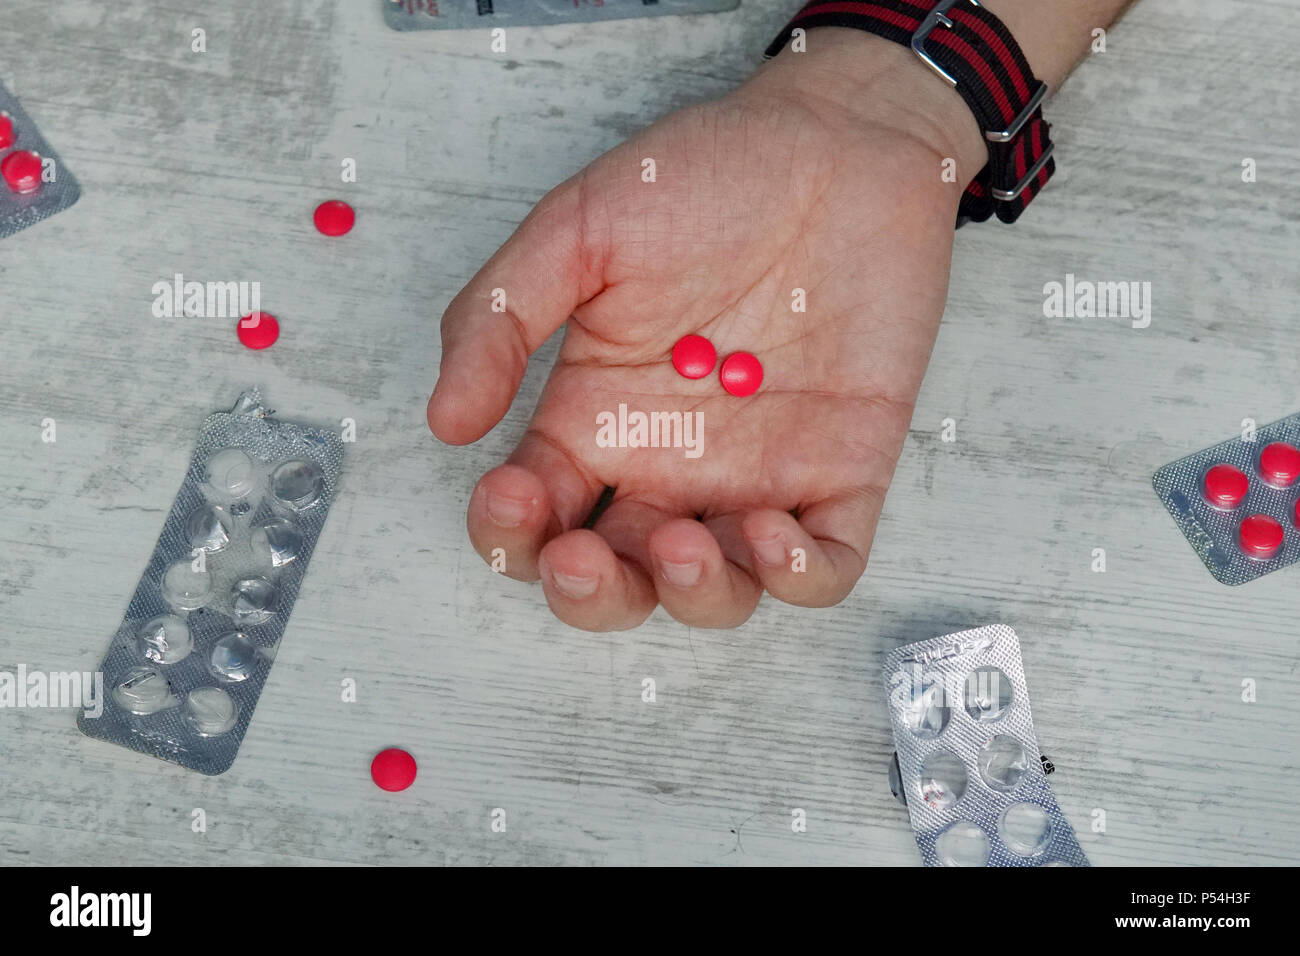 Des Menschen Hand mit leeren Pillen, rote Tabletten in die Hand eines jungen Mannes, Konzept der Selbstmord, Vergiftung von Pillen, Überdosis Drogen. Medikament Stockfoto